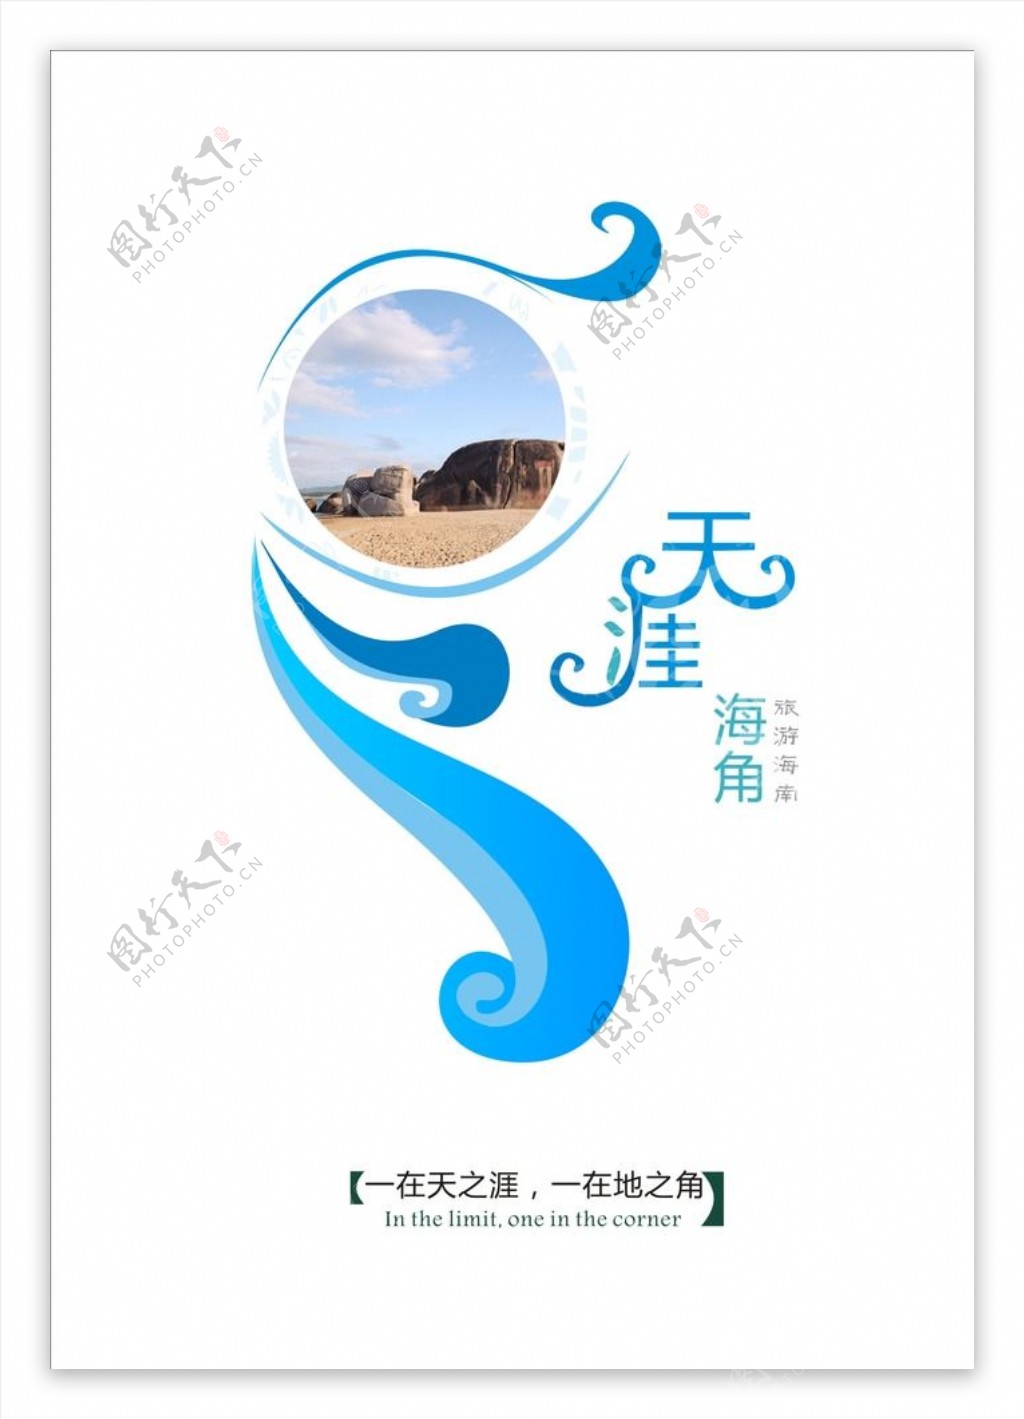 海南旅游公益推广海报